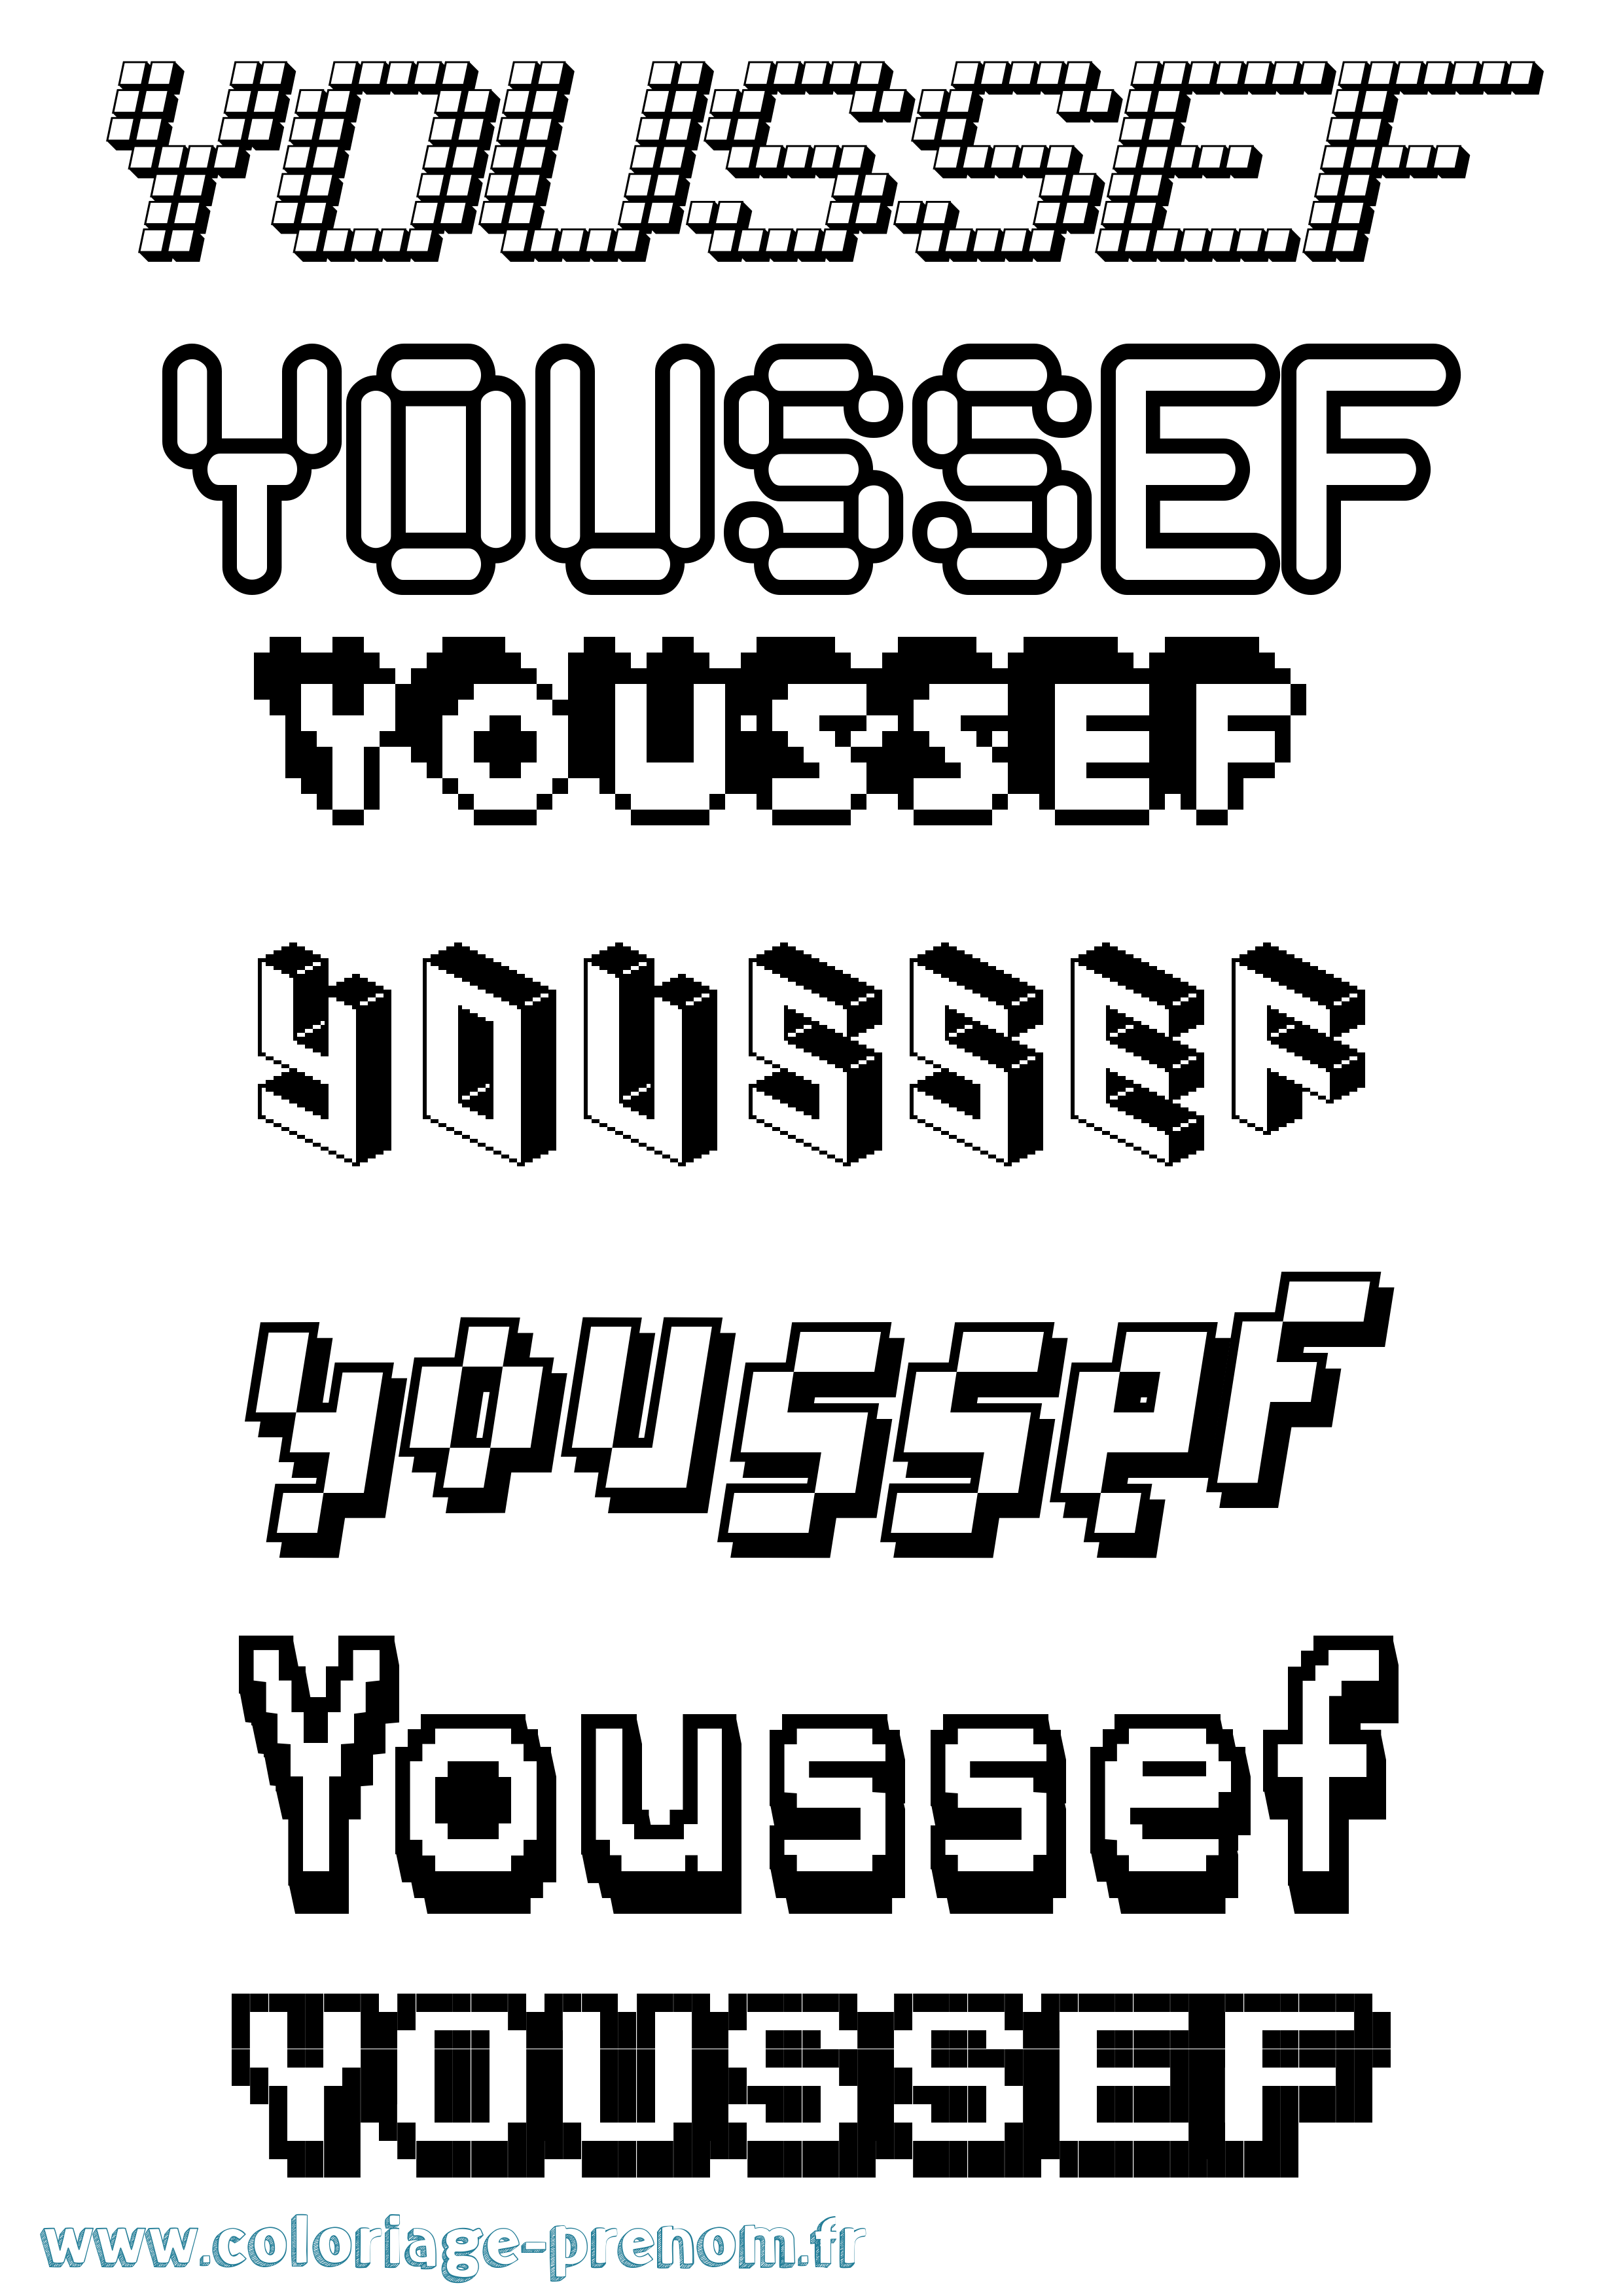 Coloriage prénom Youssef Pixel